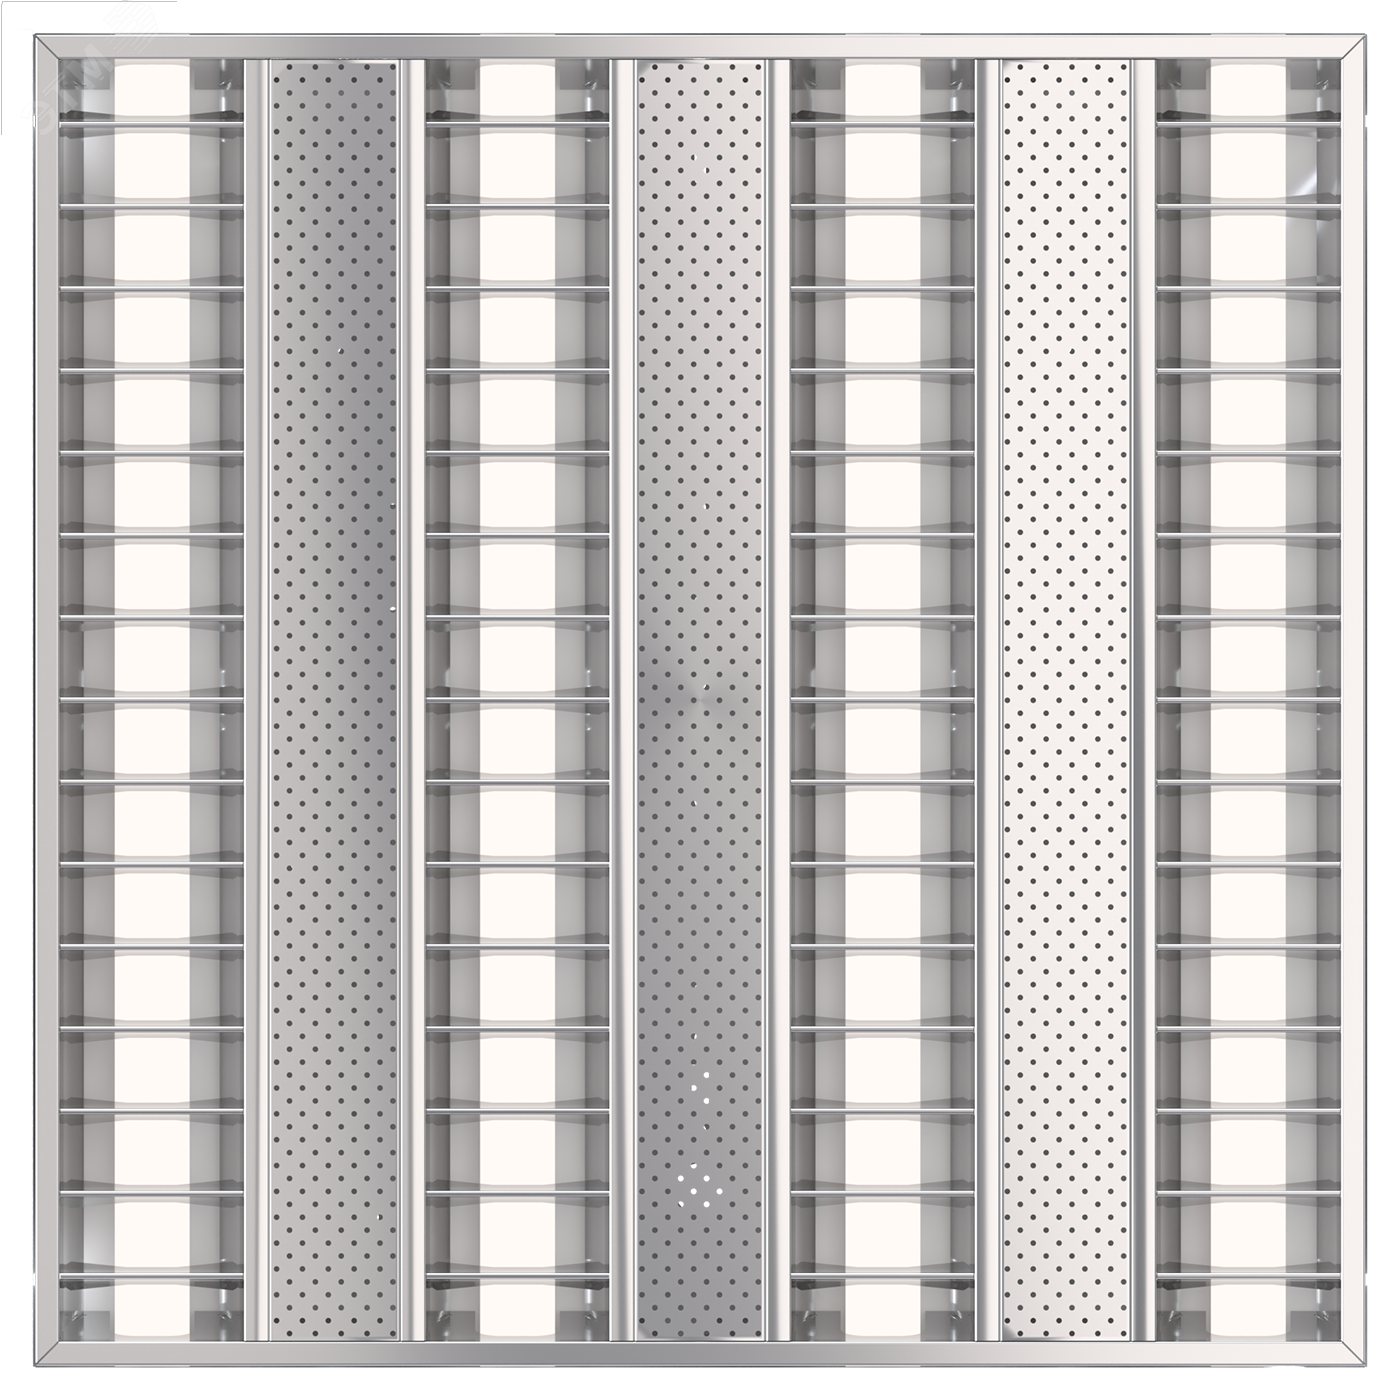 Светильник PTF/R 4x14 Т5 бипараболический с белыми неперфорированными вставками ЭПРА 1021000230 Световые Технологии - превью 6